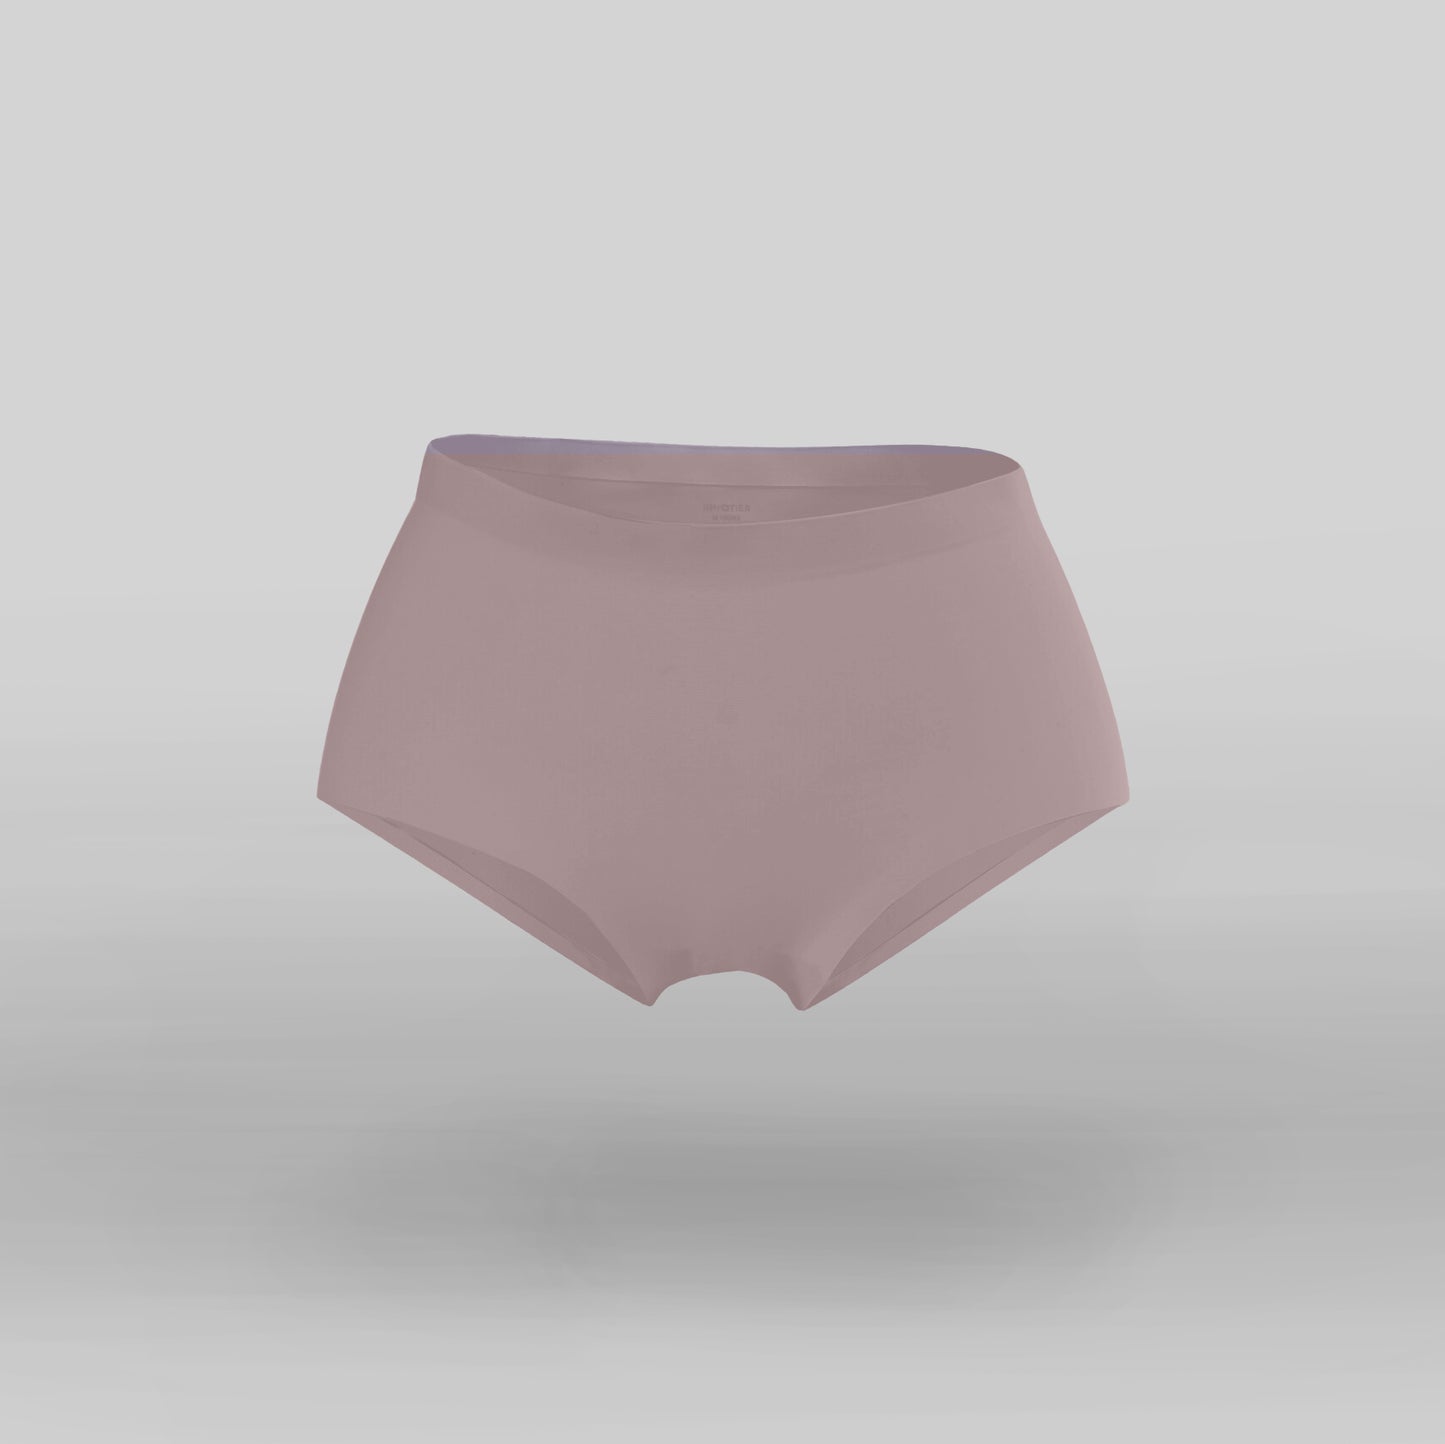 Antival Underwear – 3 pcs Set (Mid rise)